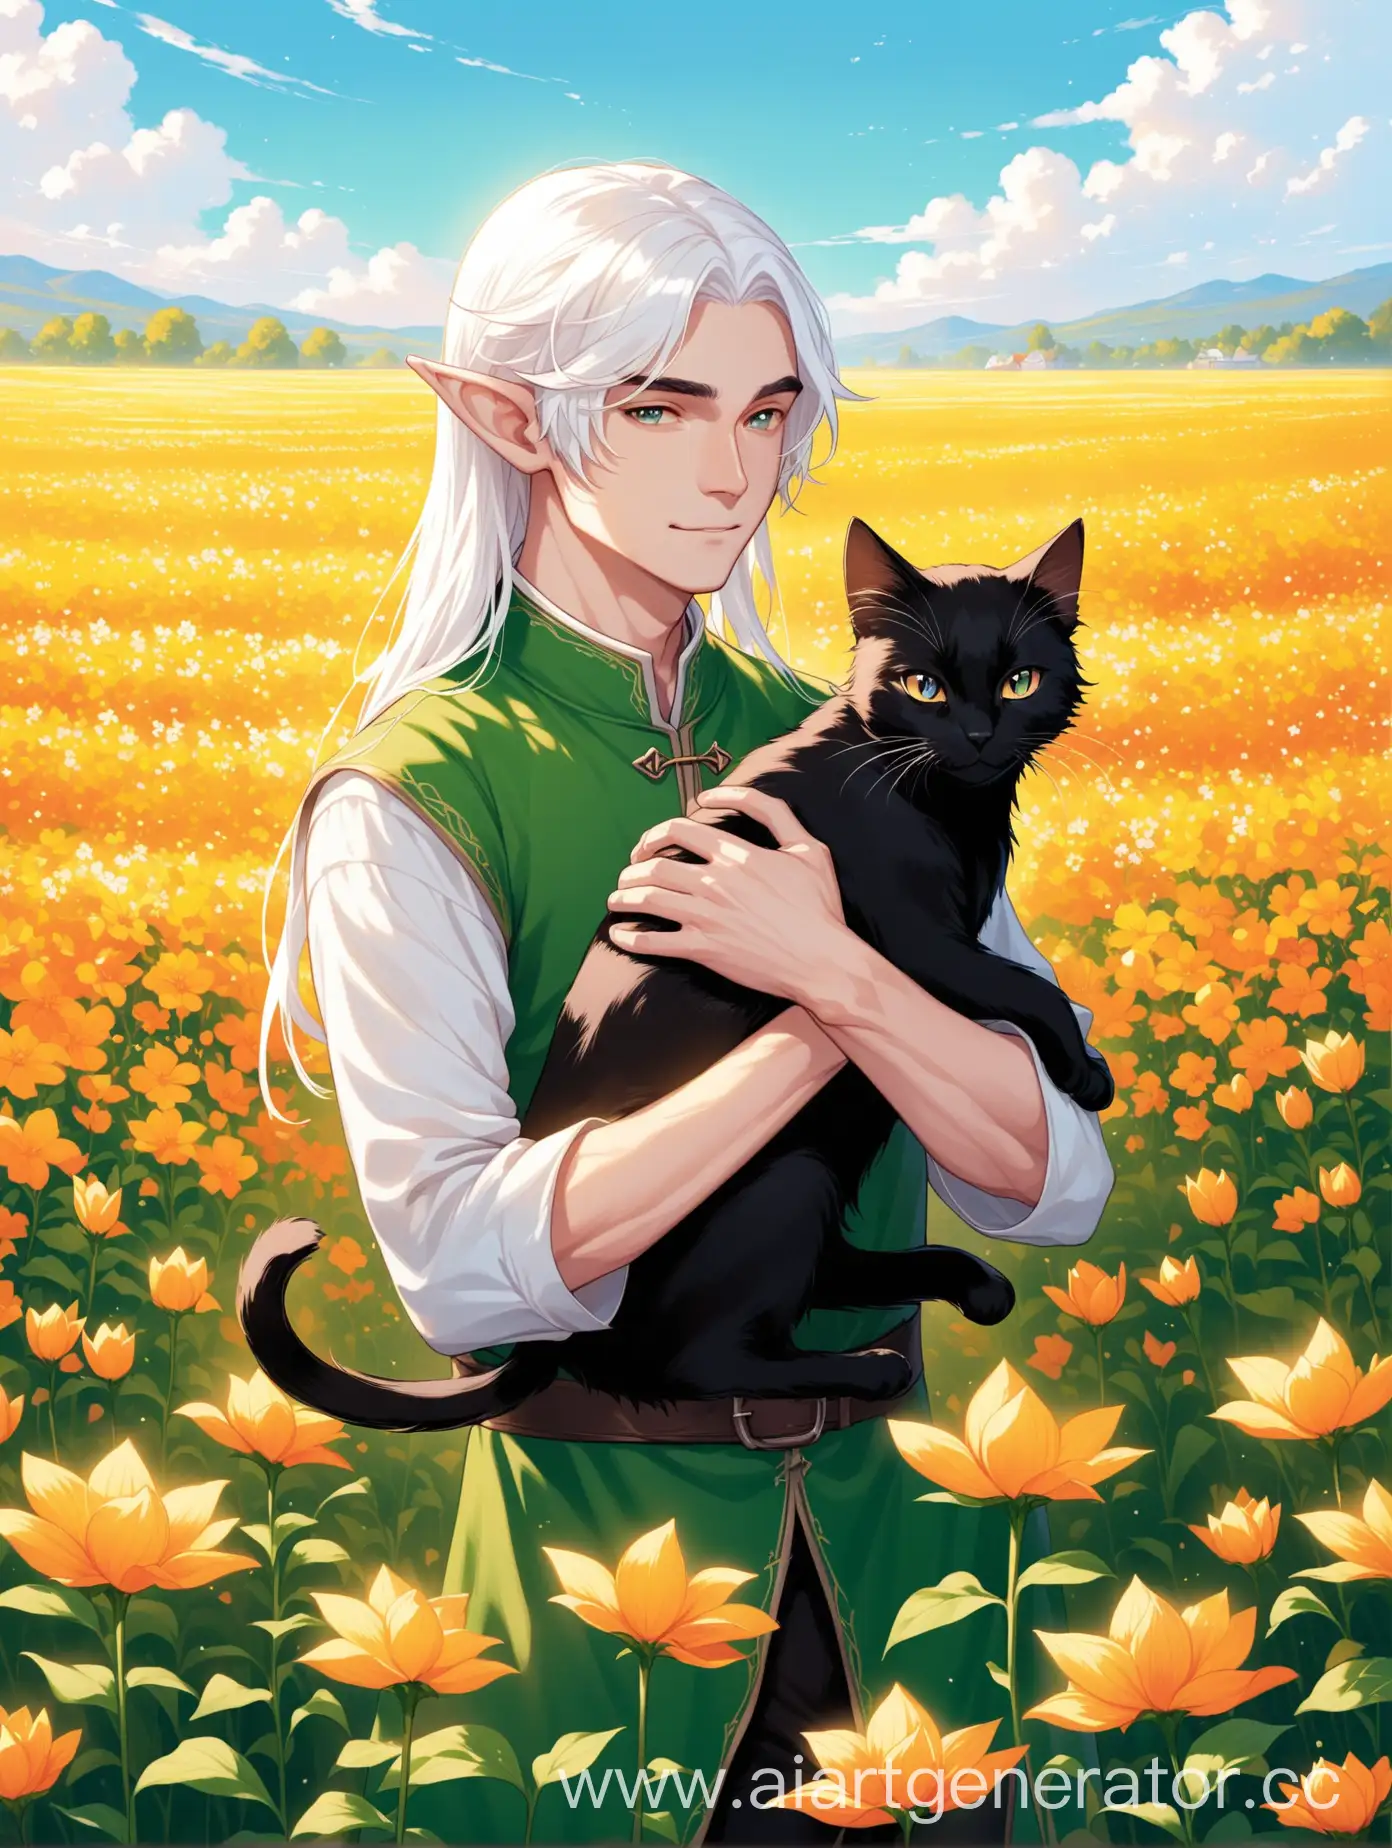 Парень эльф с длинными белыми волосами держит в руках чёрного кота на фоне цветочного поля